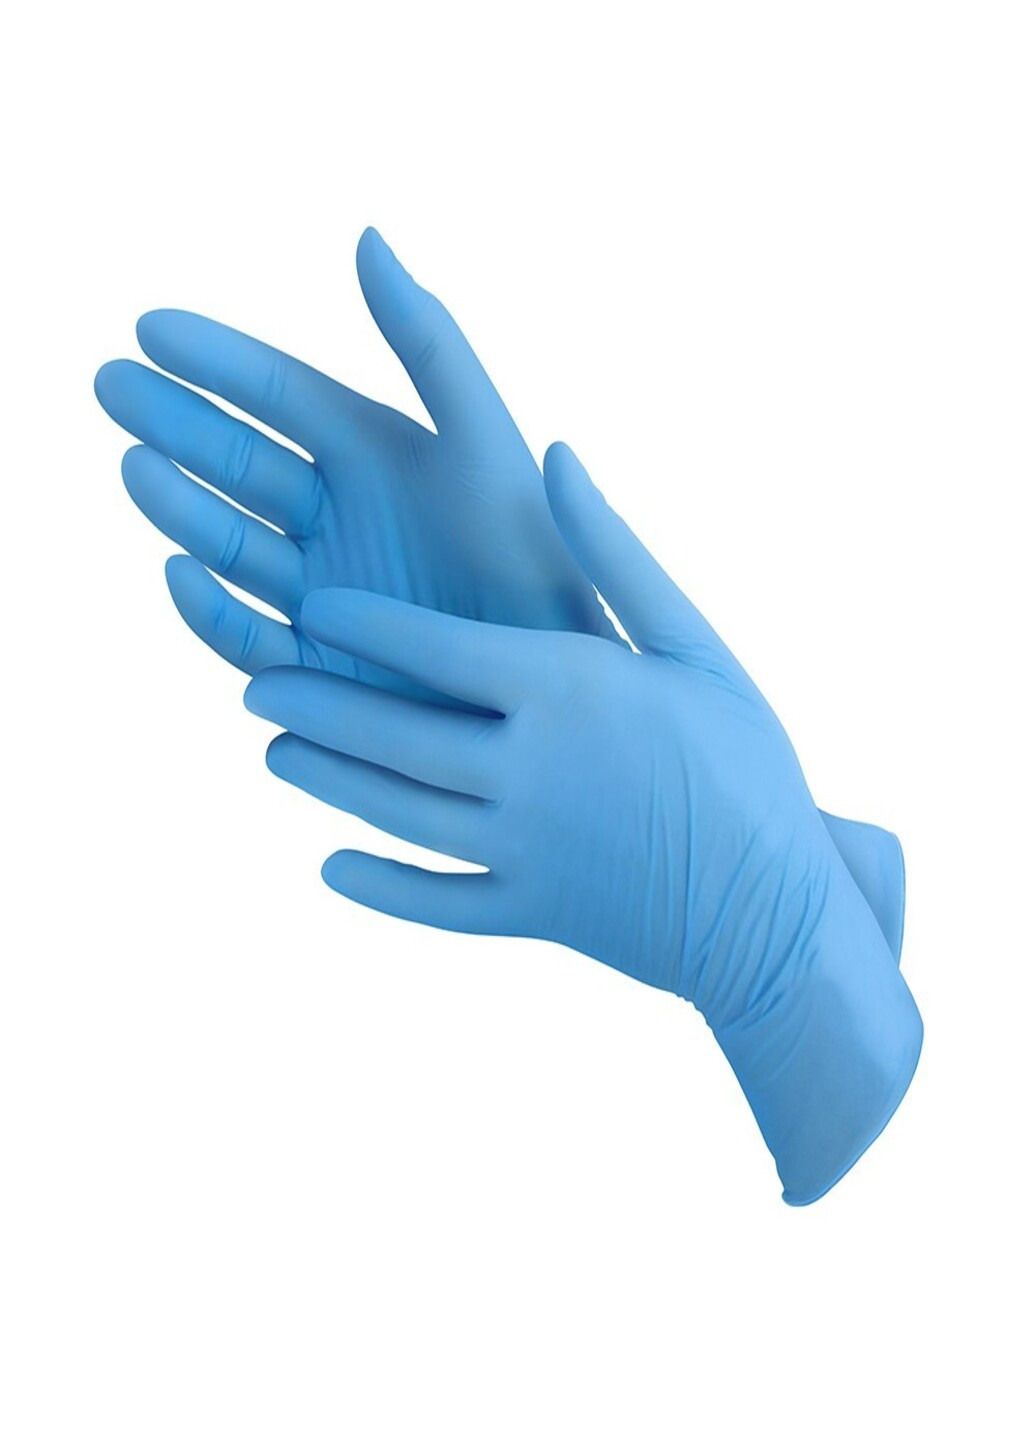 Перчатки нитриловые Vitals Blue смотровые текстурированные без пудры голубые размер M 100 шт (3 г.) Medicom (254546699)